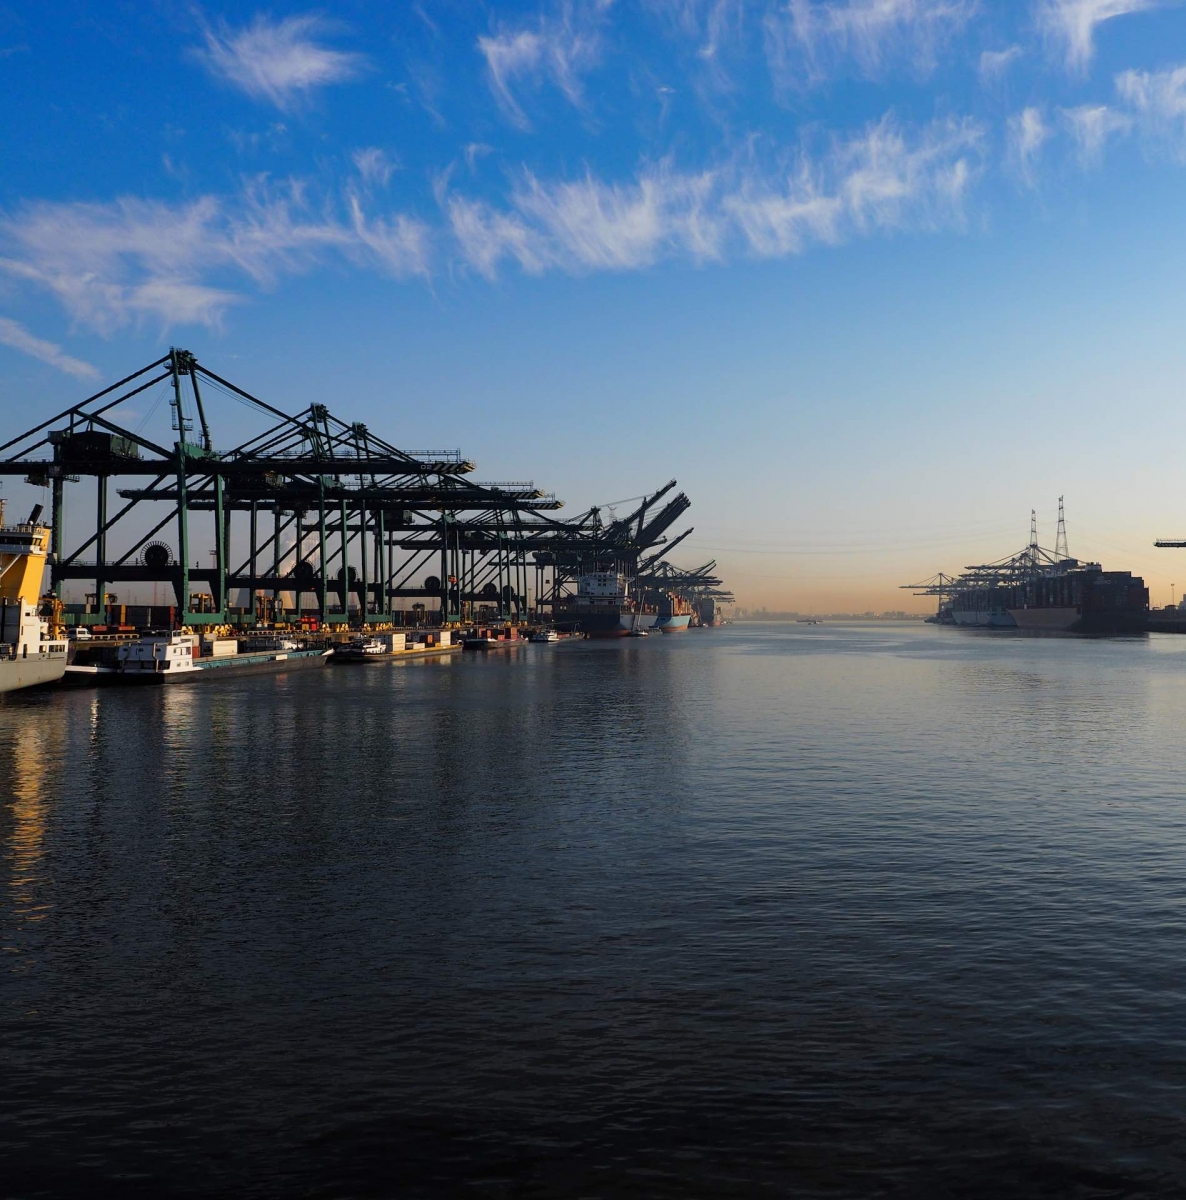 Портовые краны разгружают контейнеры с кораблей солнечным утром в порту Антверпена.